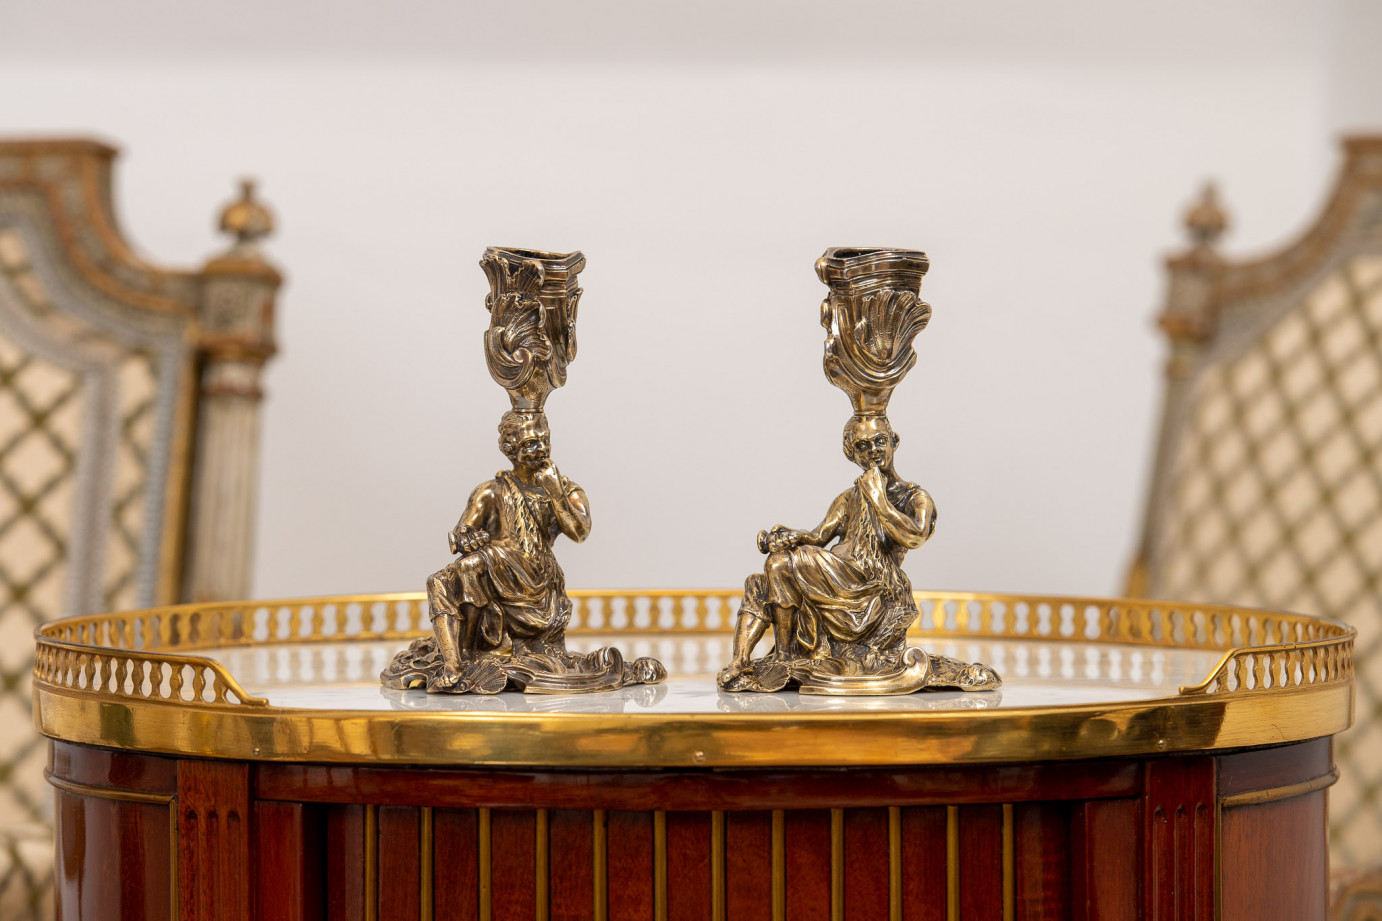 Robert GARRARD II (1793-1881)  - A pair of silver-gilt candelsticks